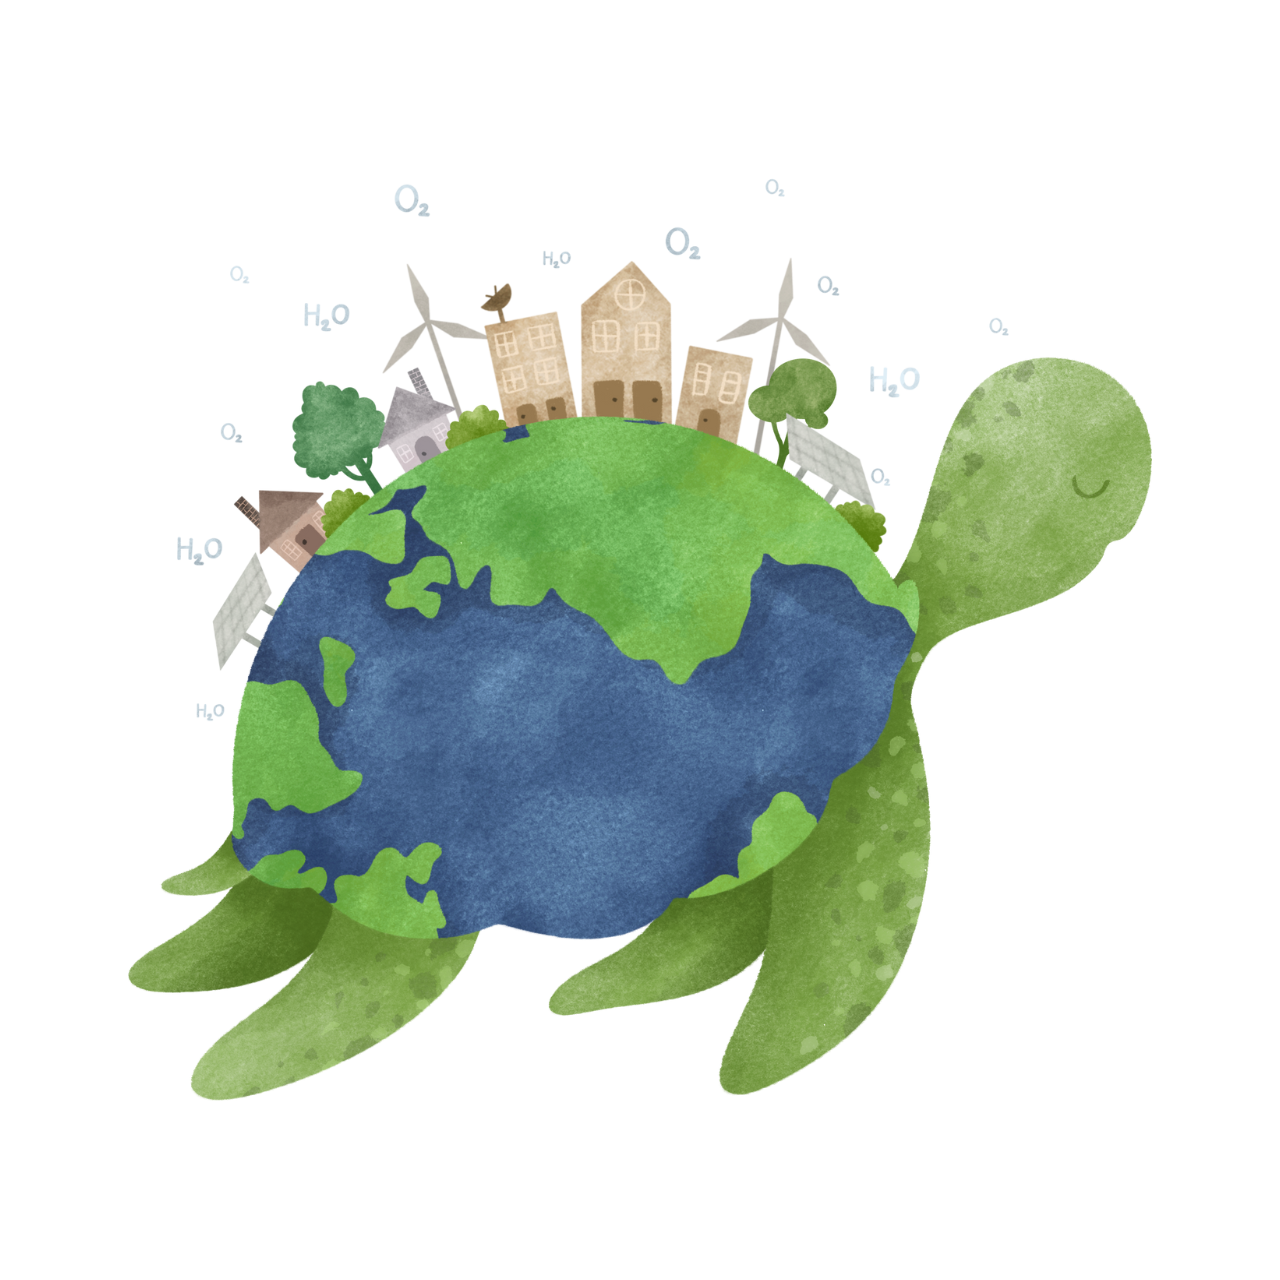 Earth Turtle illustration